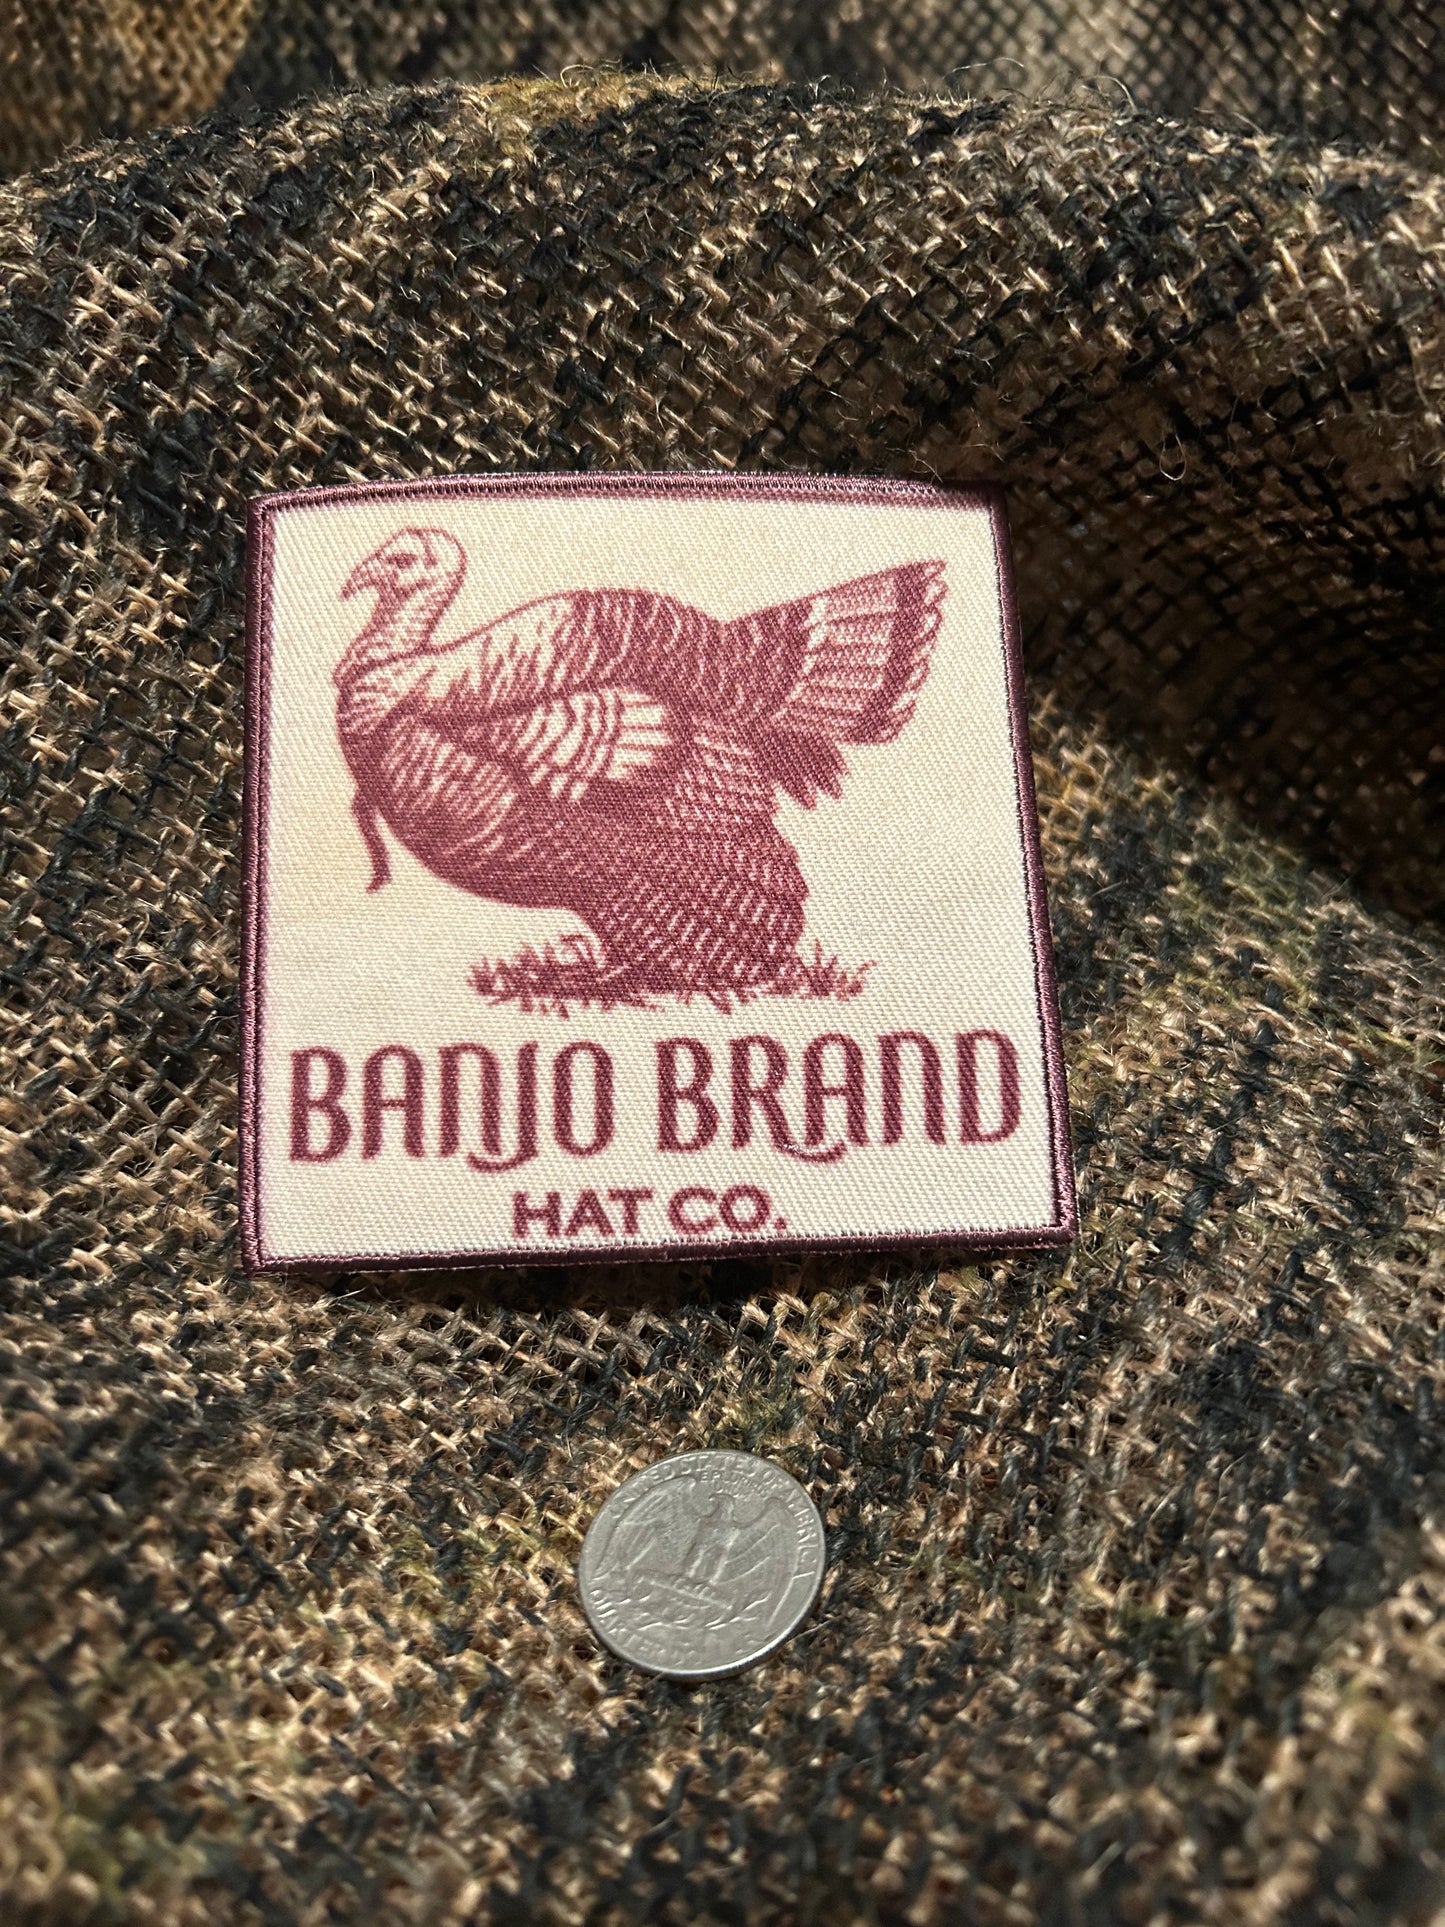 Banjo Brand Hat Co Turkey Patch